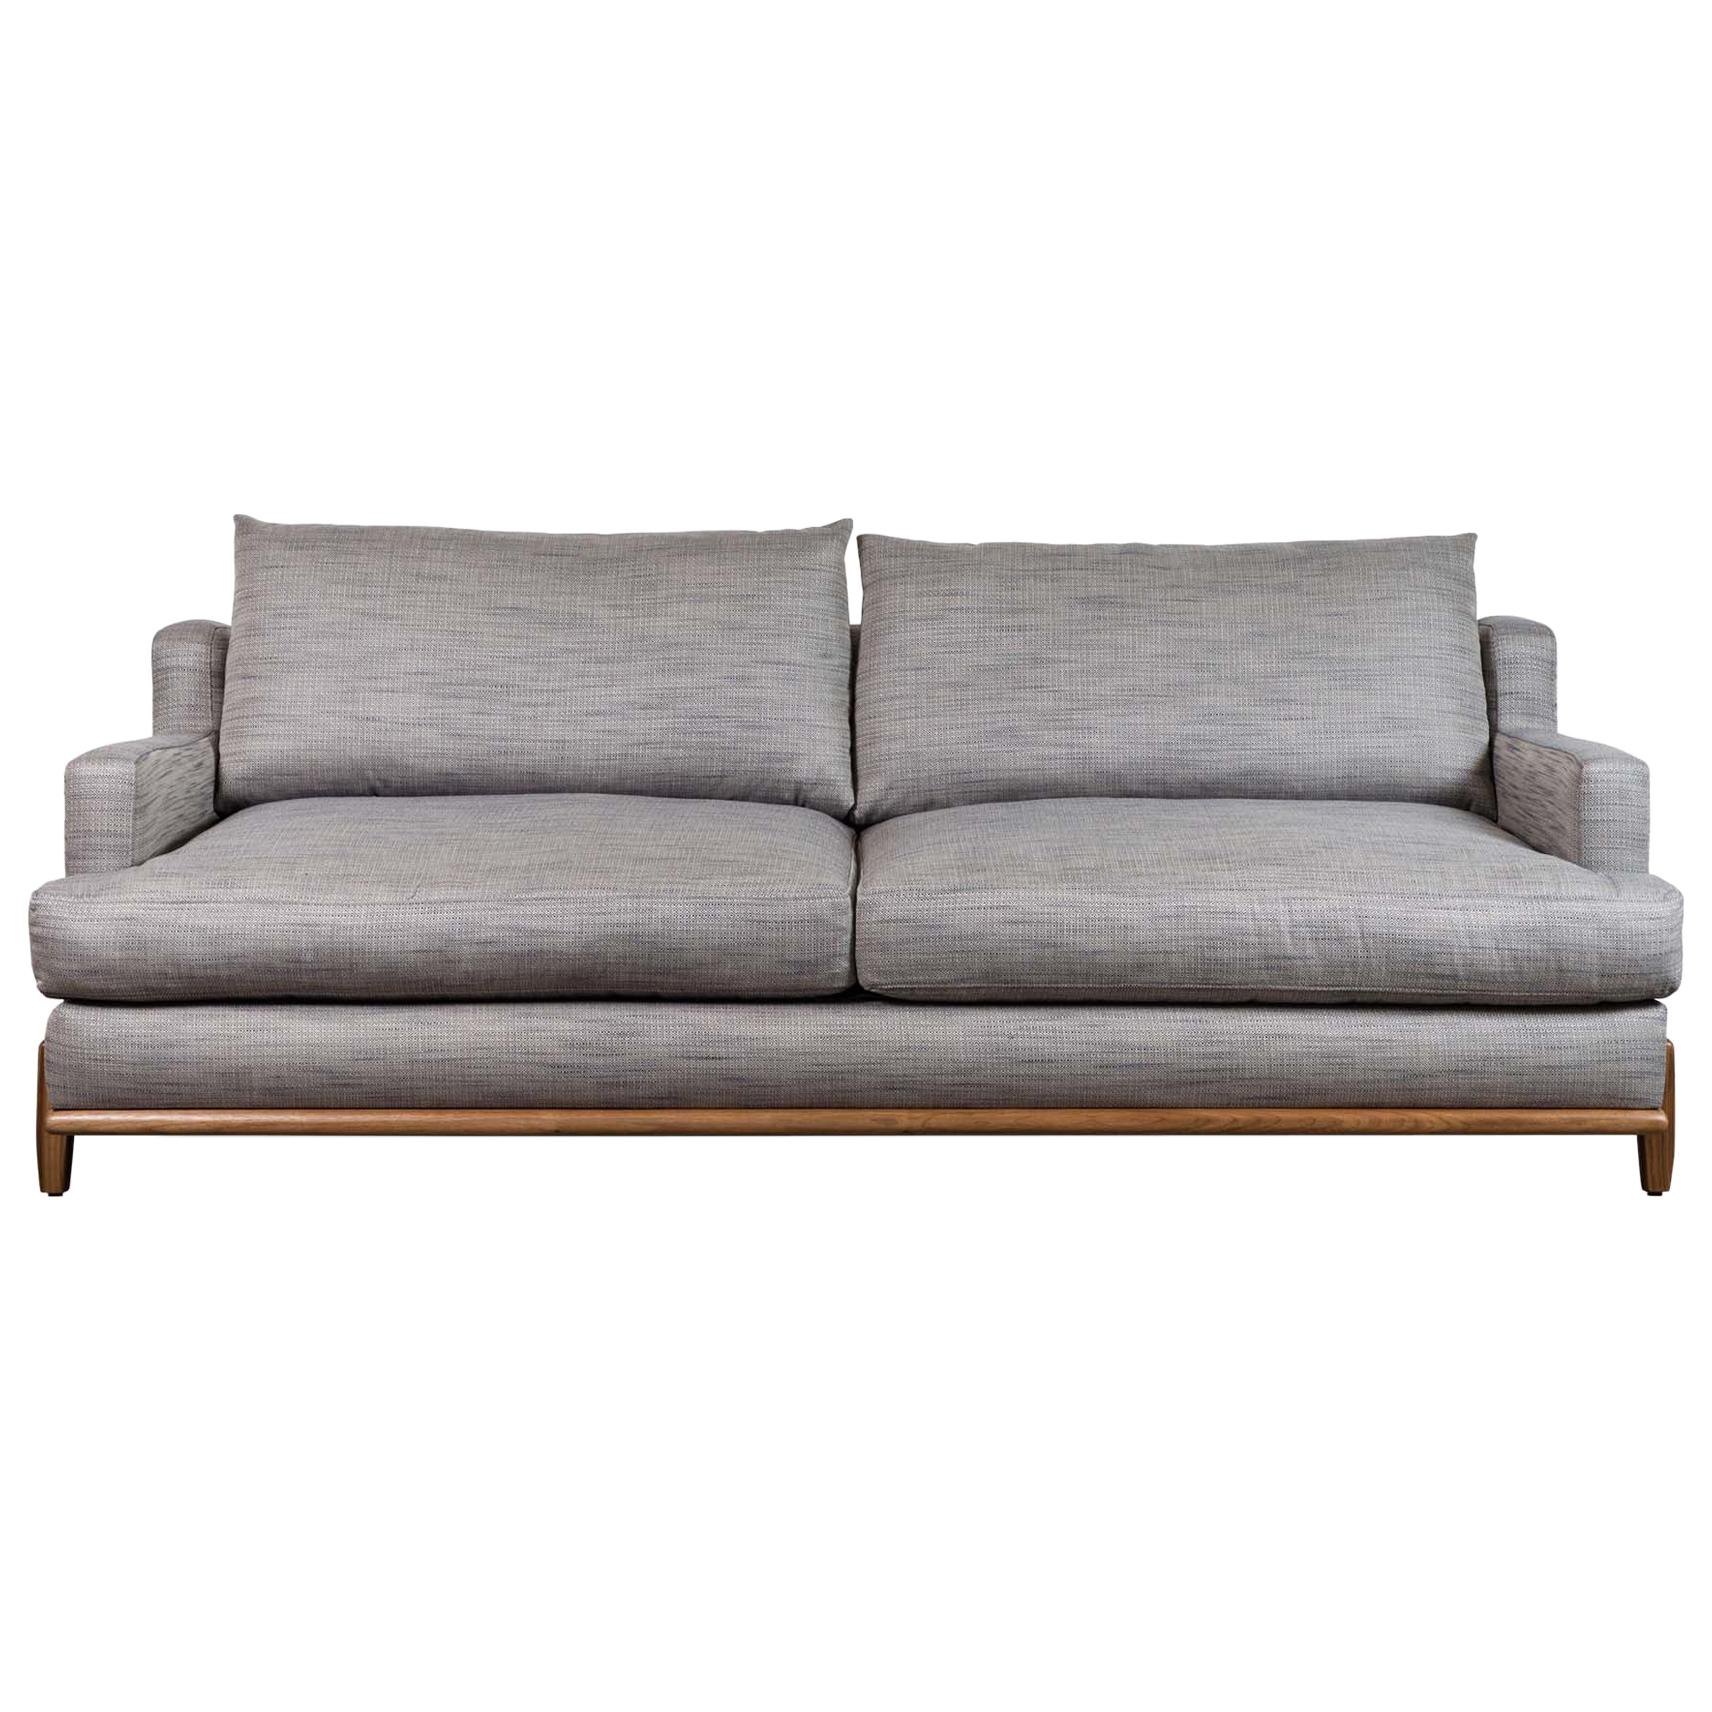 Grey George Sofa by Brian Paquette for Lawson-Fenning